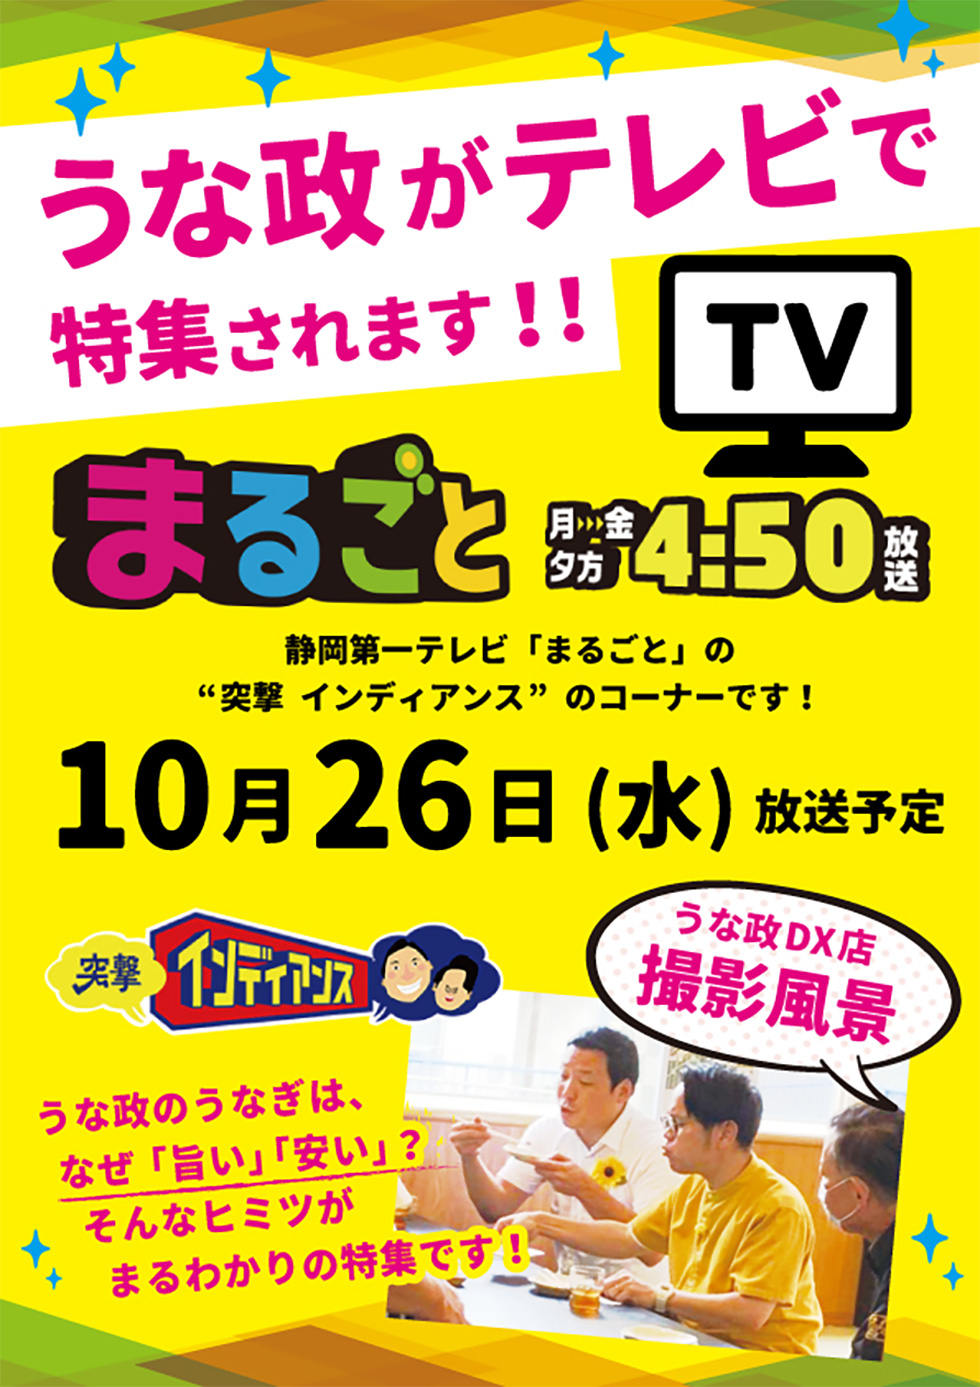 うな政がテレビで特集されます！静岡第一テレビ「まるごと」10/26水